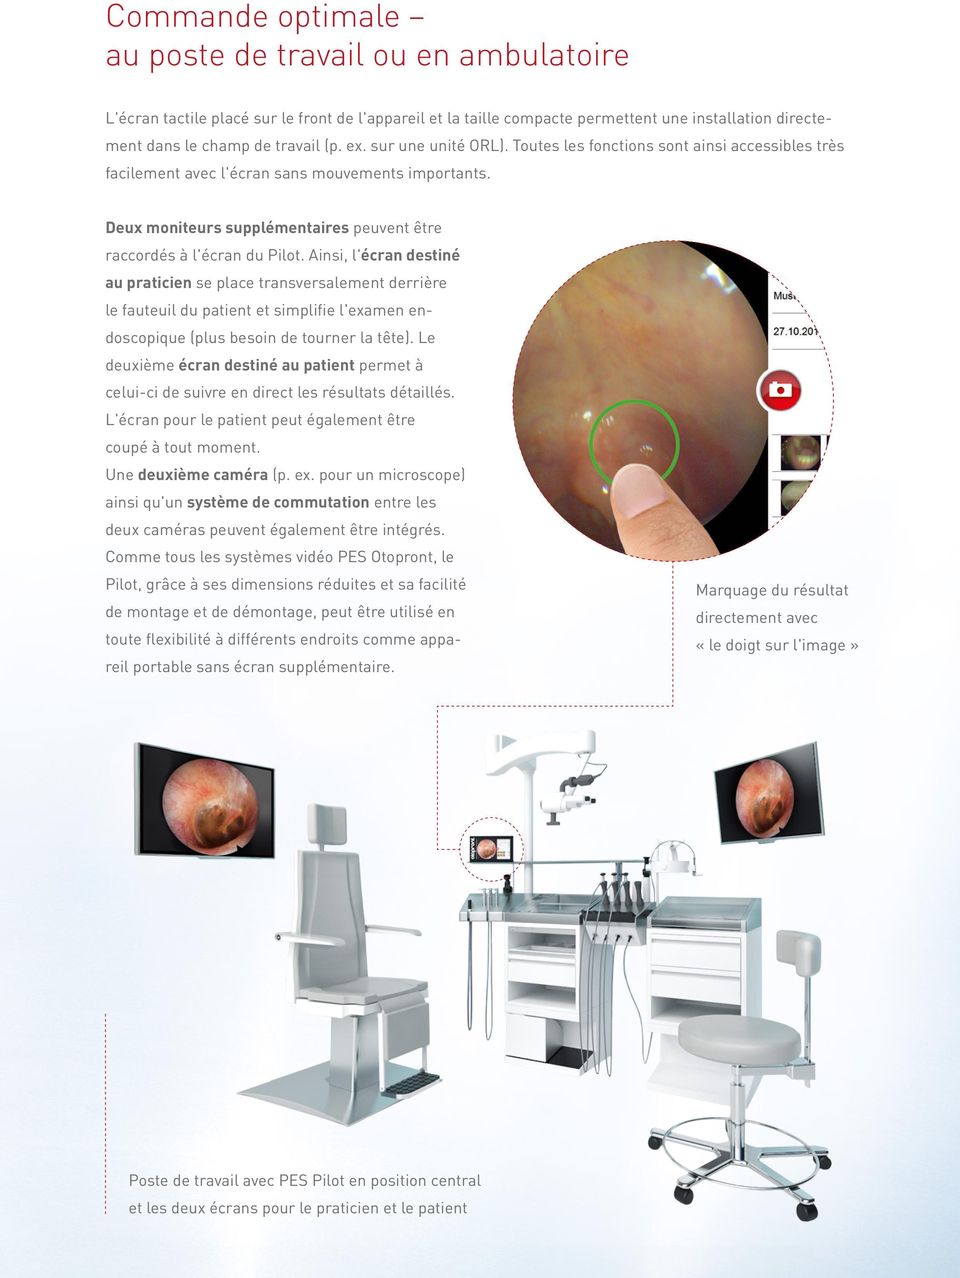 Ainsi, l'écran destiné au praticien se place transversalement derrière le fauteuil du patient et simplifie l'examen endoscopique (plus besoin de tourner la tête).